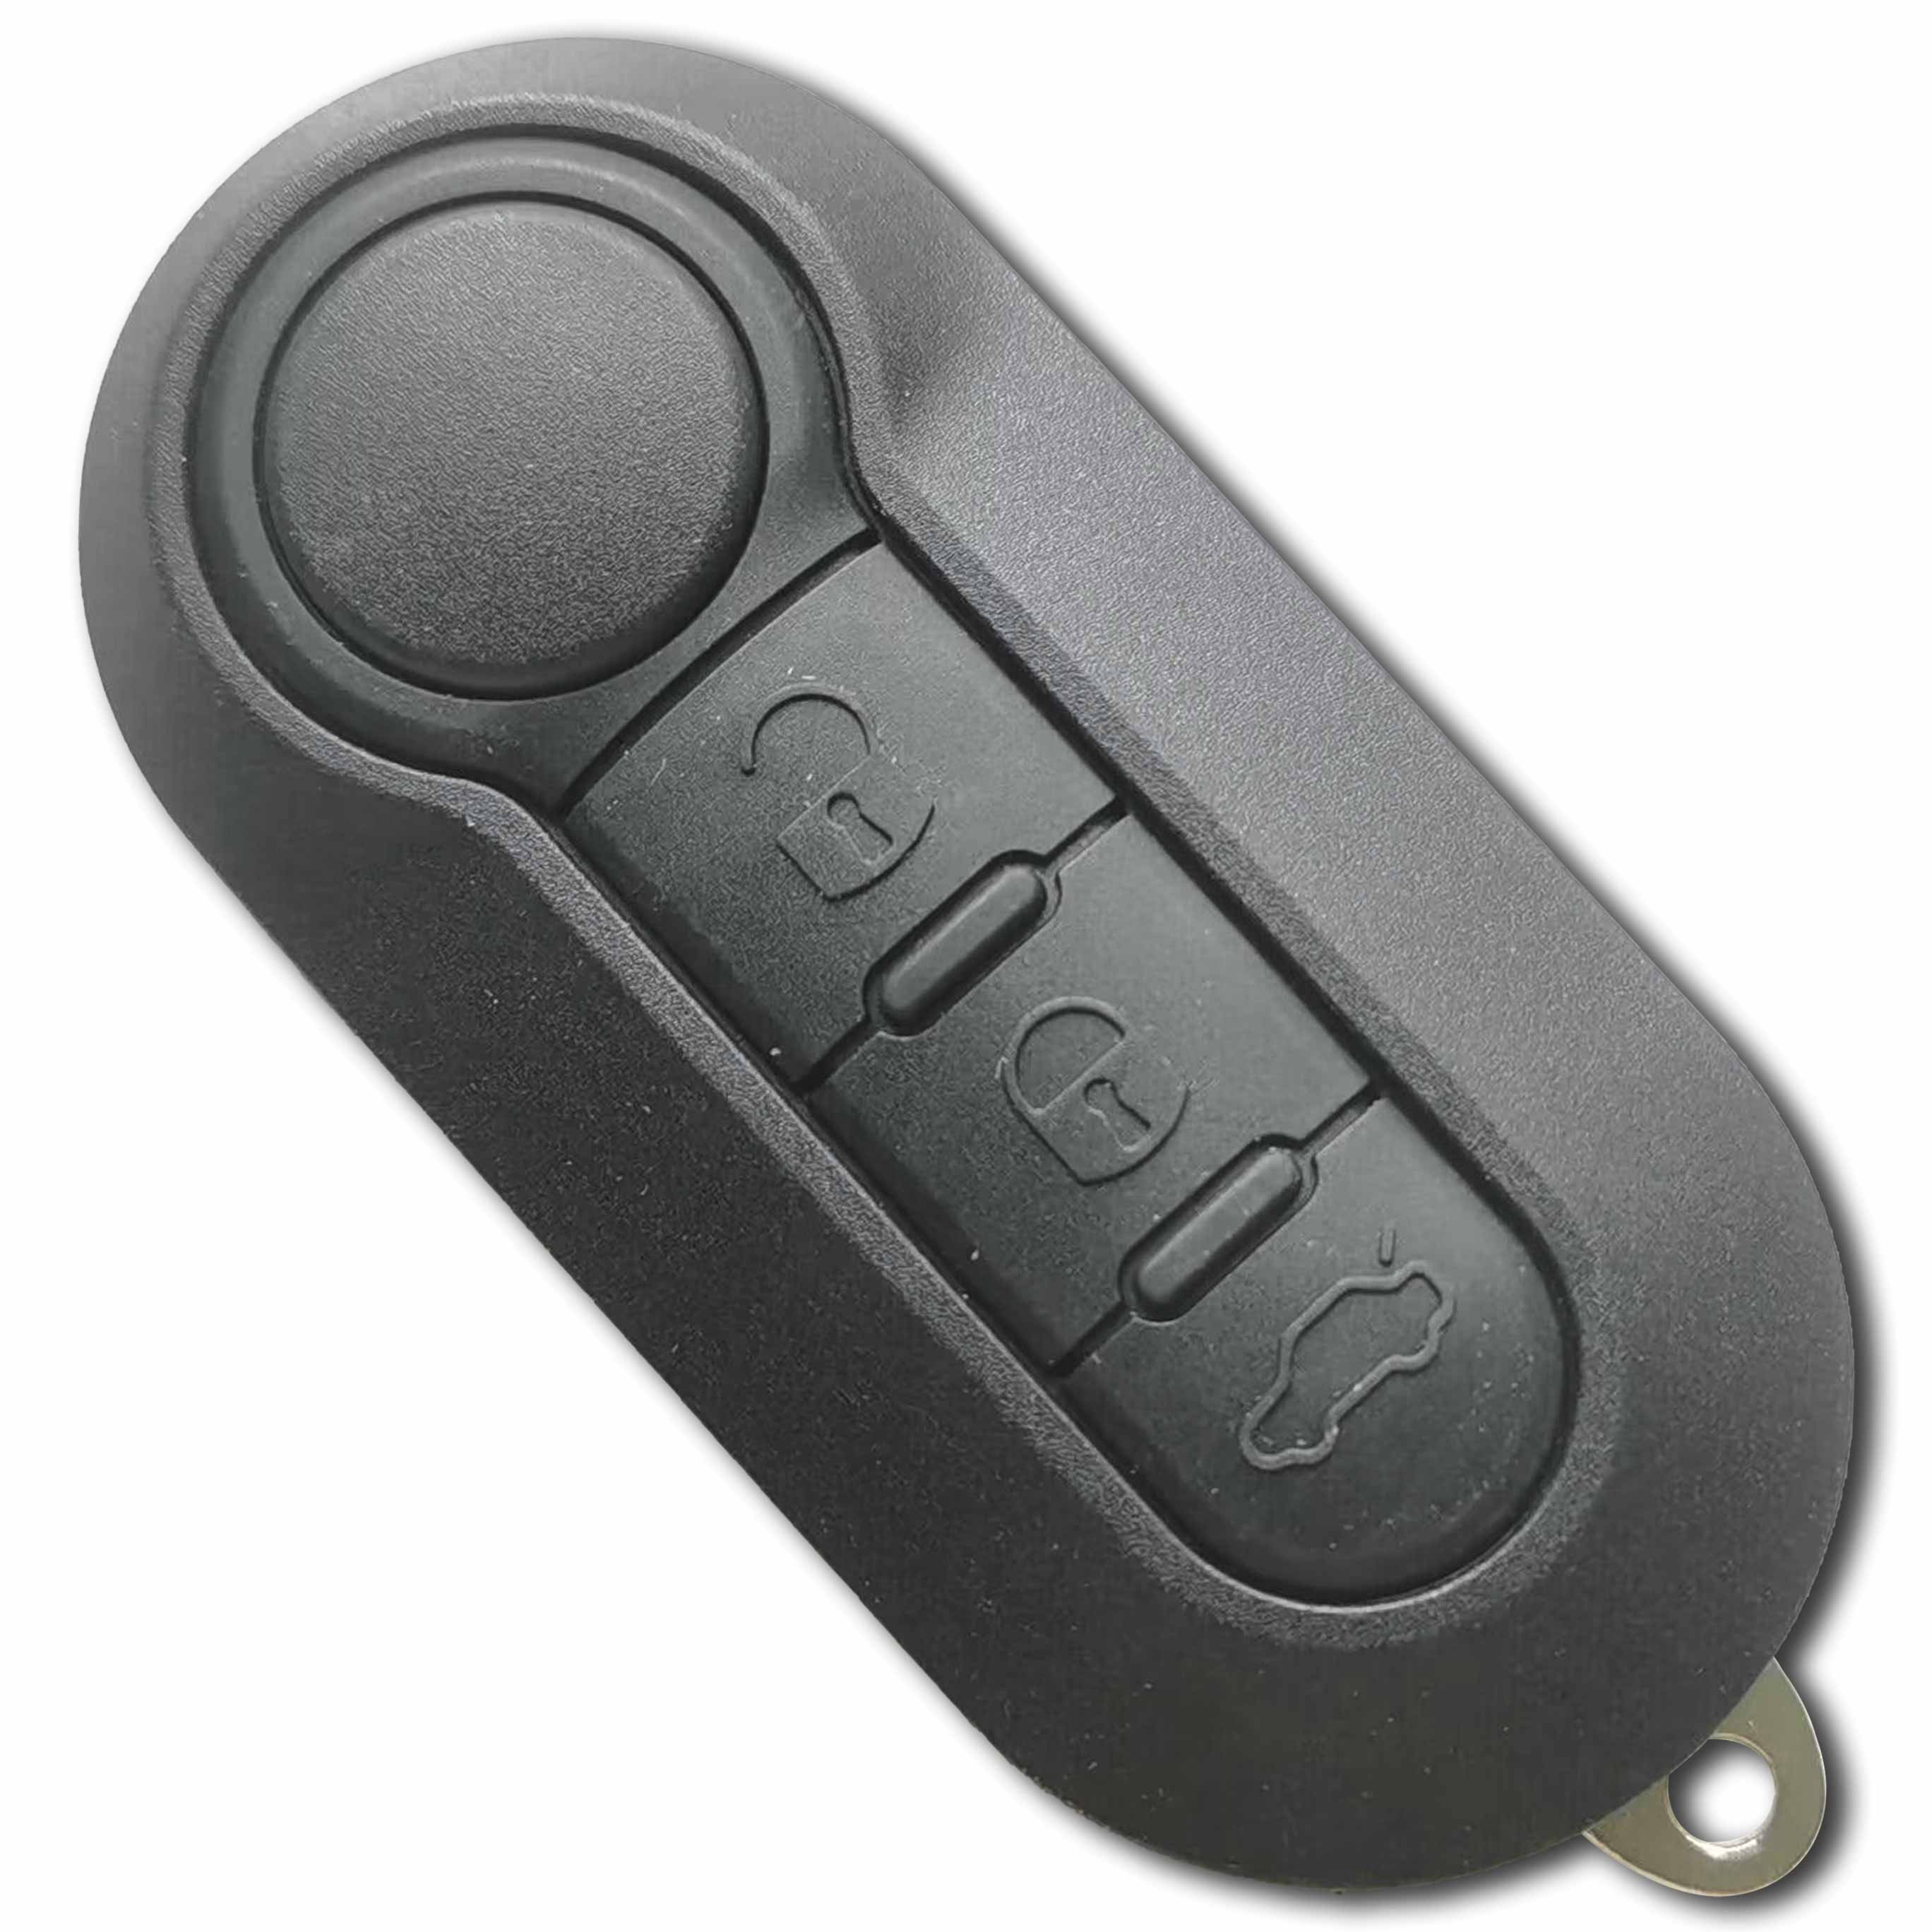 433 MHz Flip Remote Key for Fiat Citroen Peugeot Iveco / Marelli BSI 